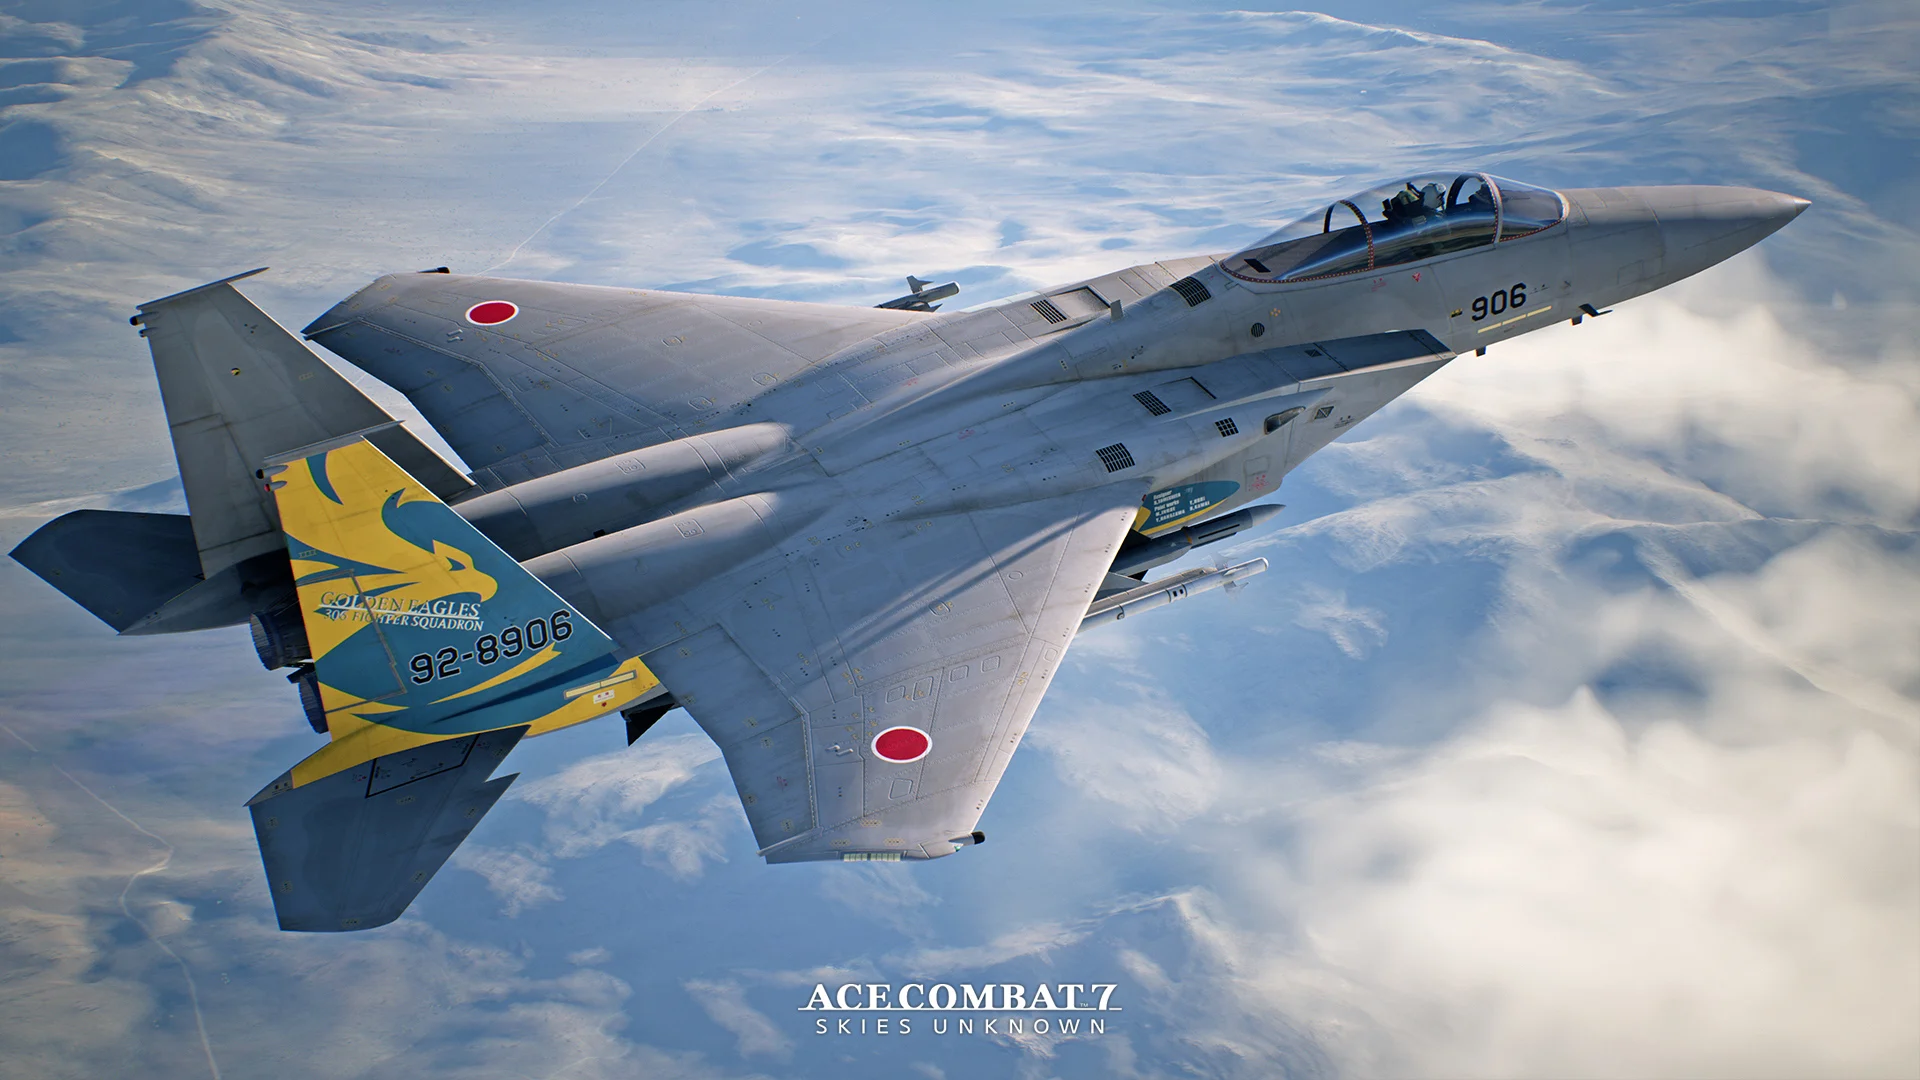 Свежее обновление Ace Combat 7 добавило в игру три скина и классический саундтрек